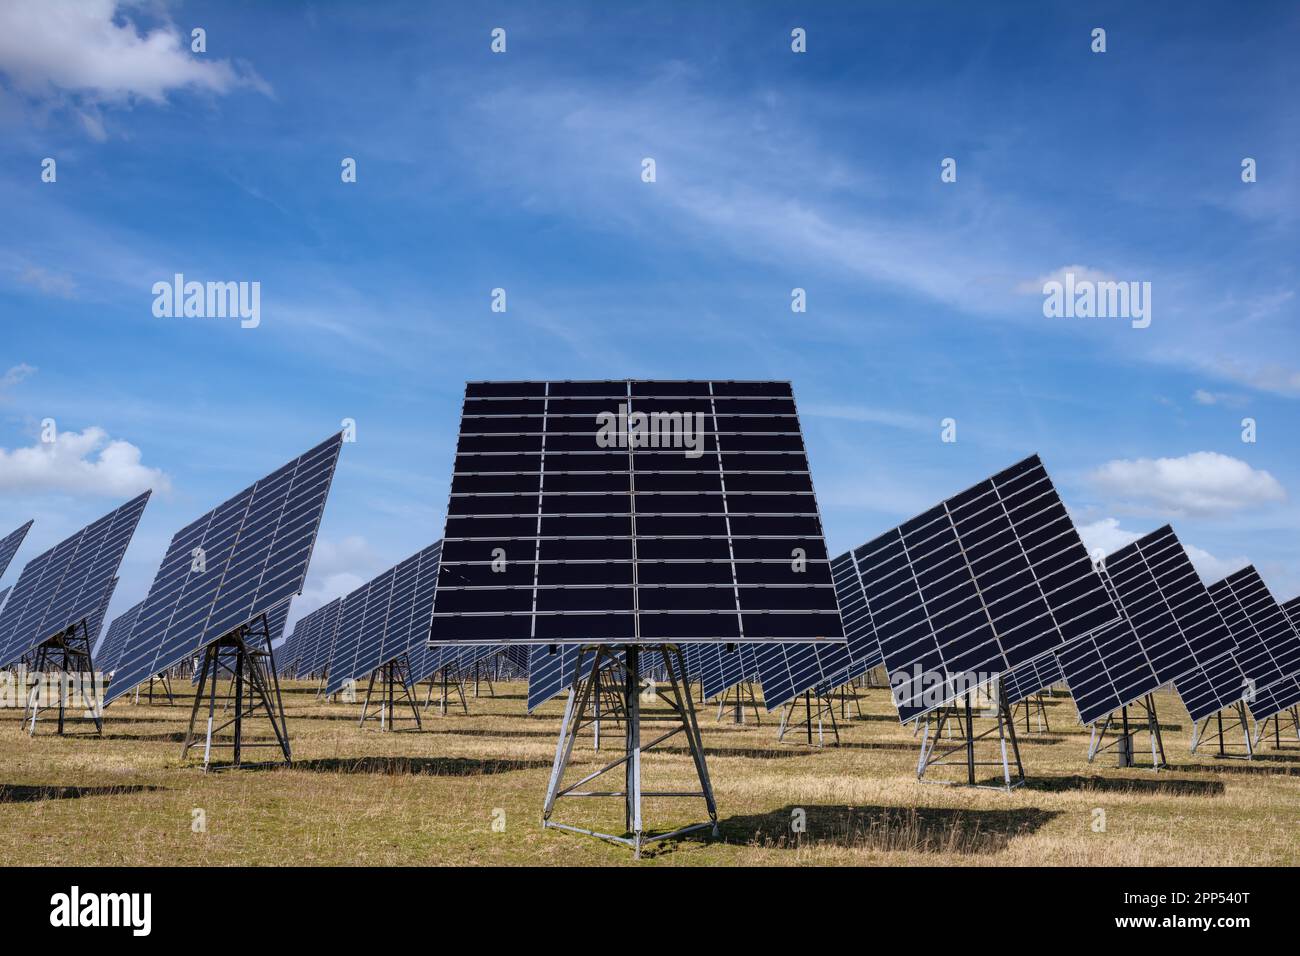 Innovative energy creation in a solar park Stock Photo